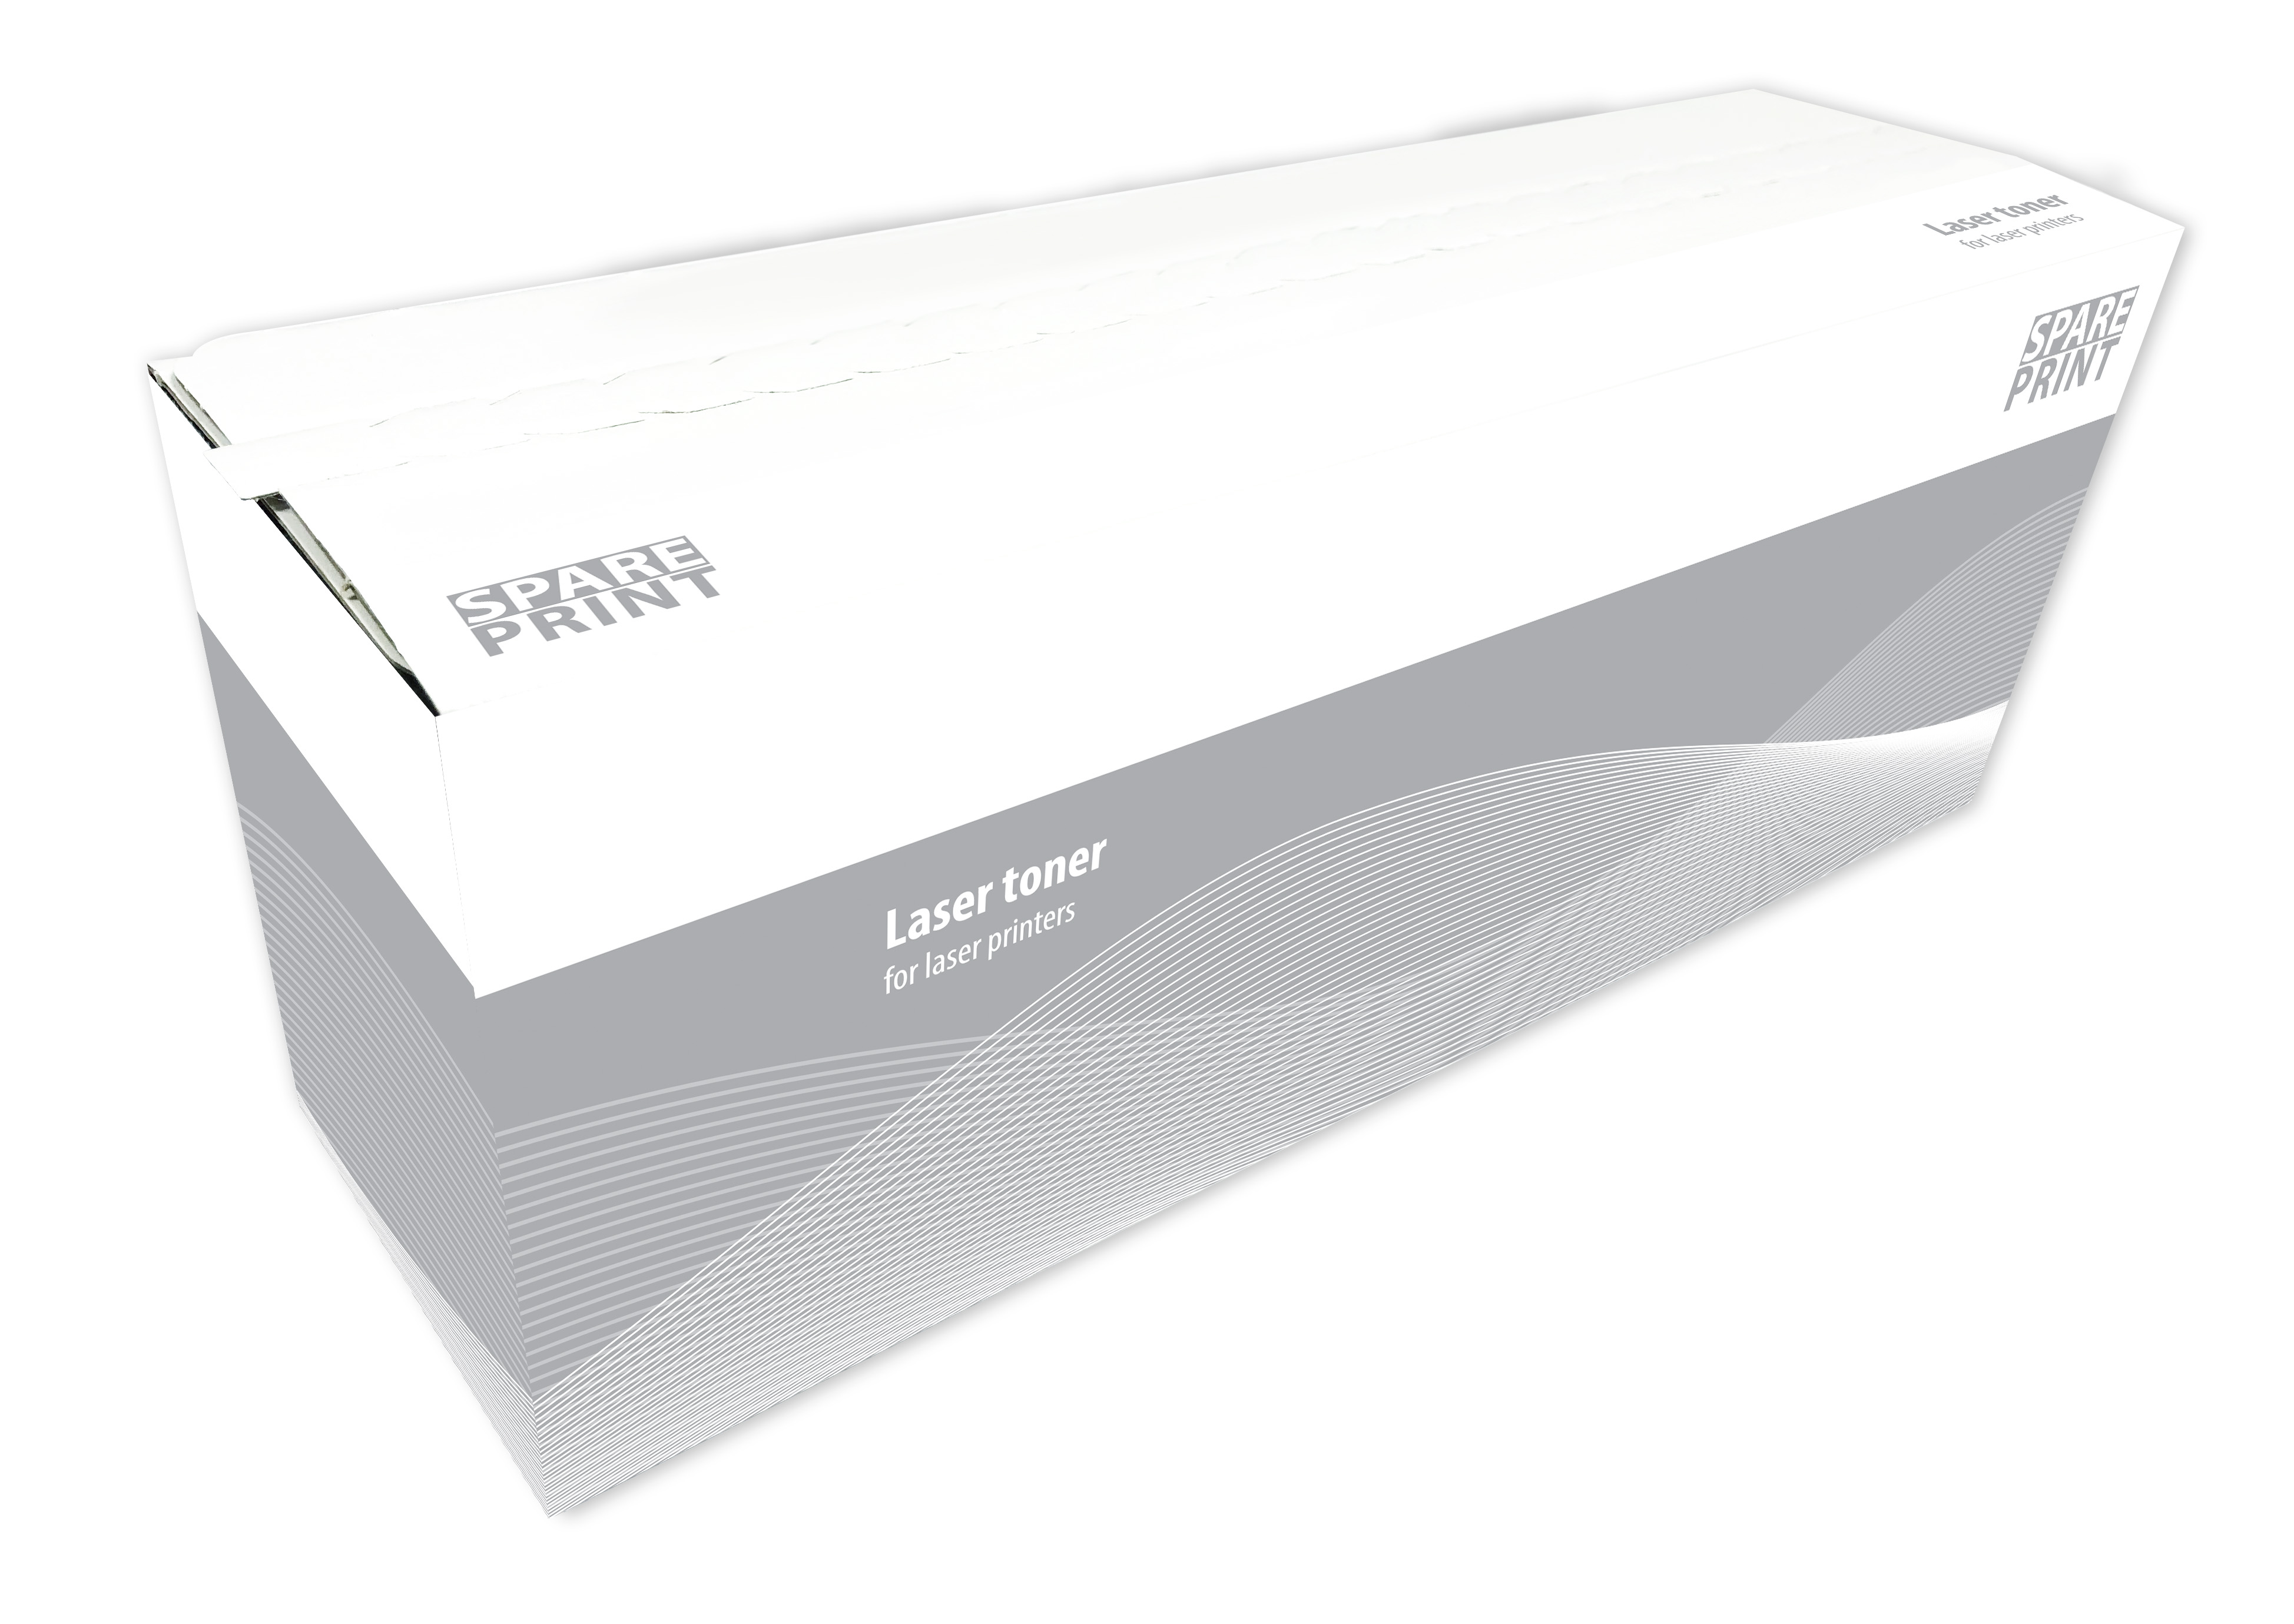 SPARE PRINT kompatibilní toner DR-2401 pro tiskárny Brother (Premium fotoválec)